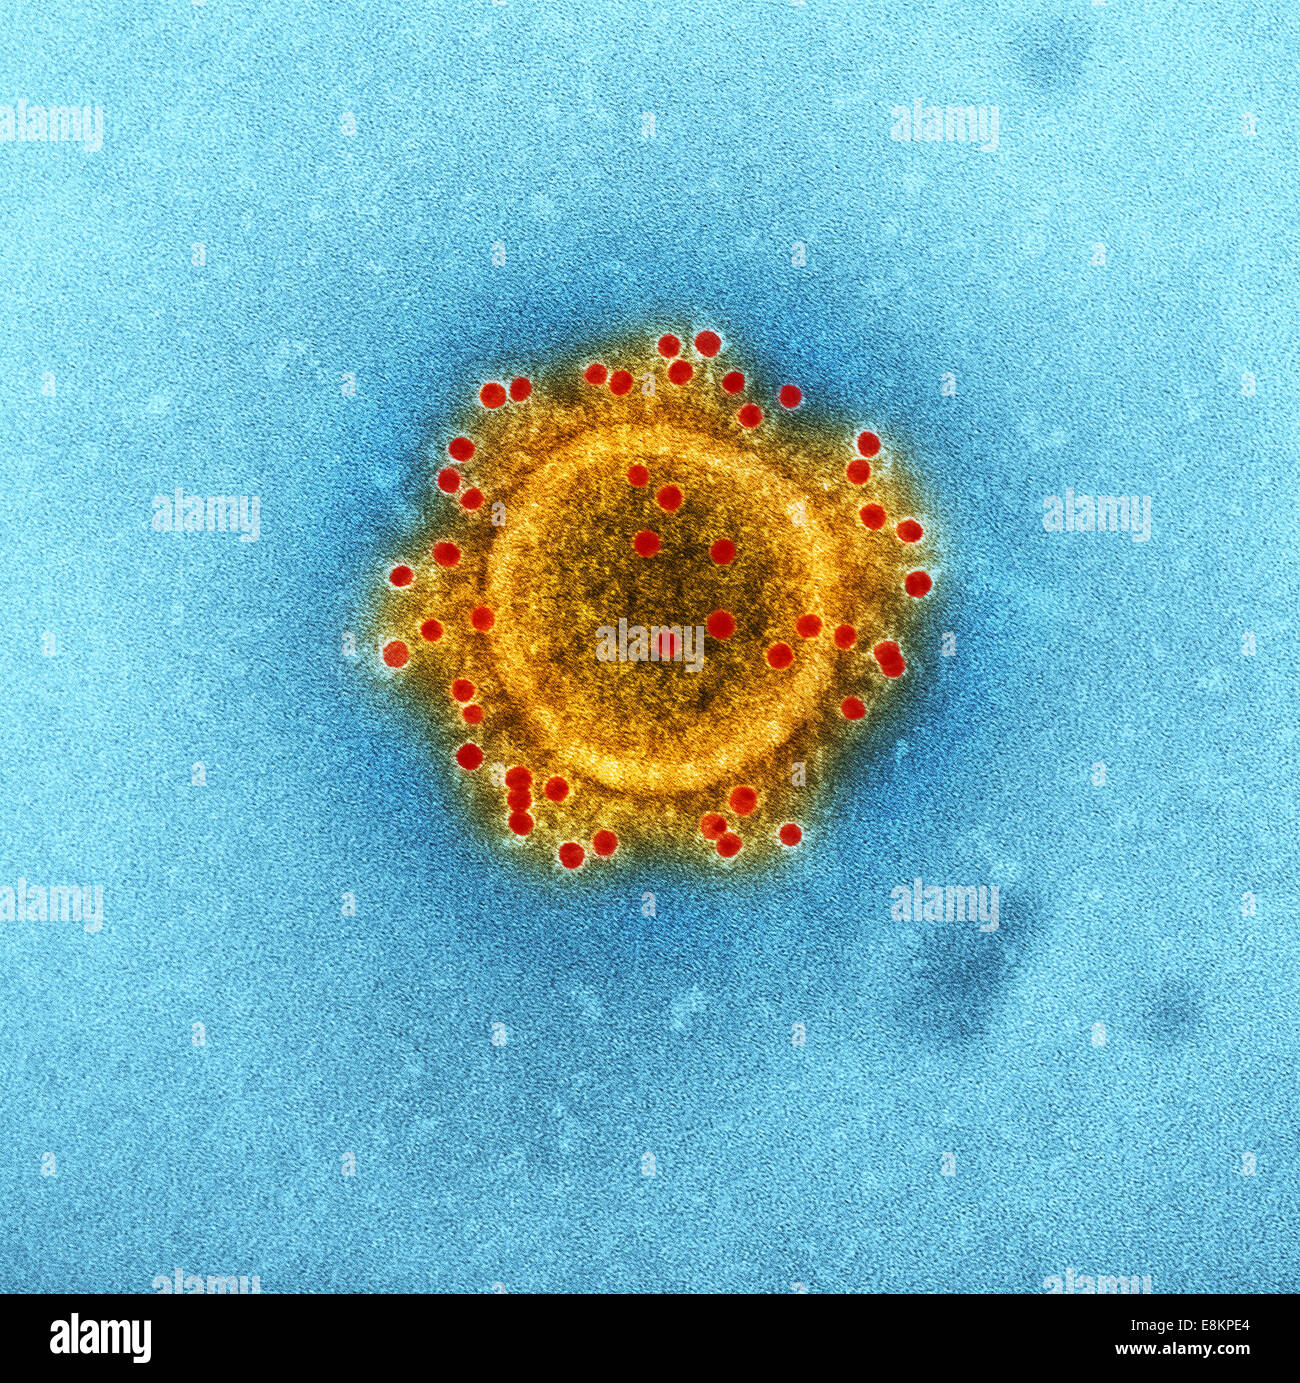 Oriente Medio coronavirus del síndrome respiratorio proteínas de la envoltura de partículas con conejo immunolabeled HCoV-EMC/2012 principal Foto de stock